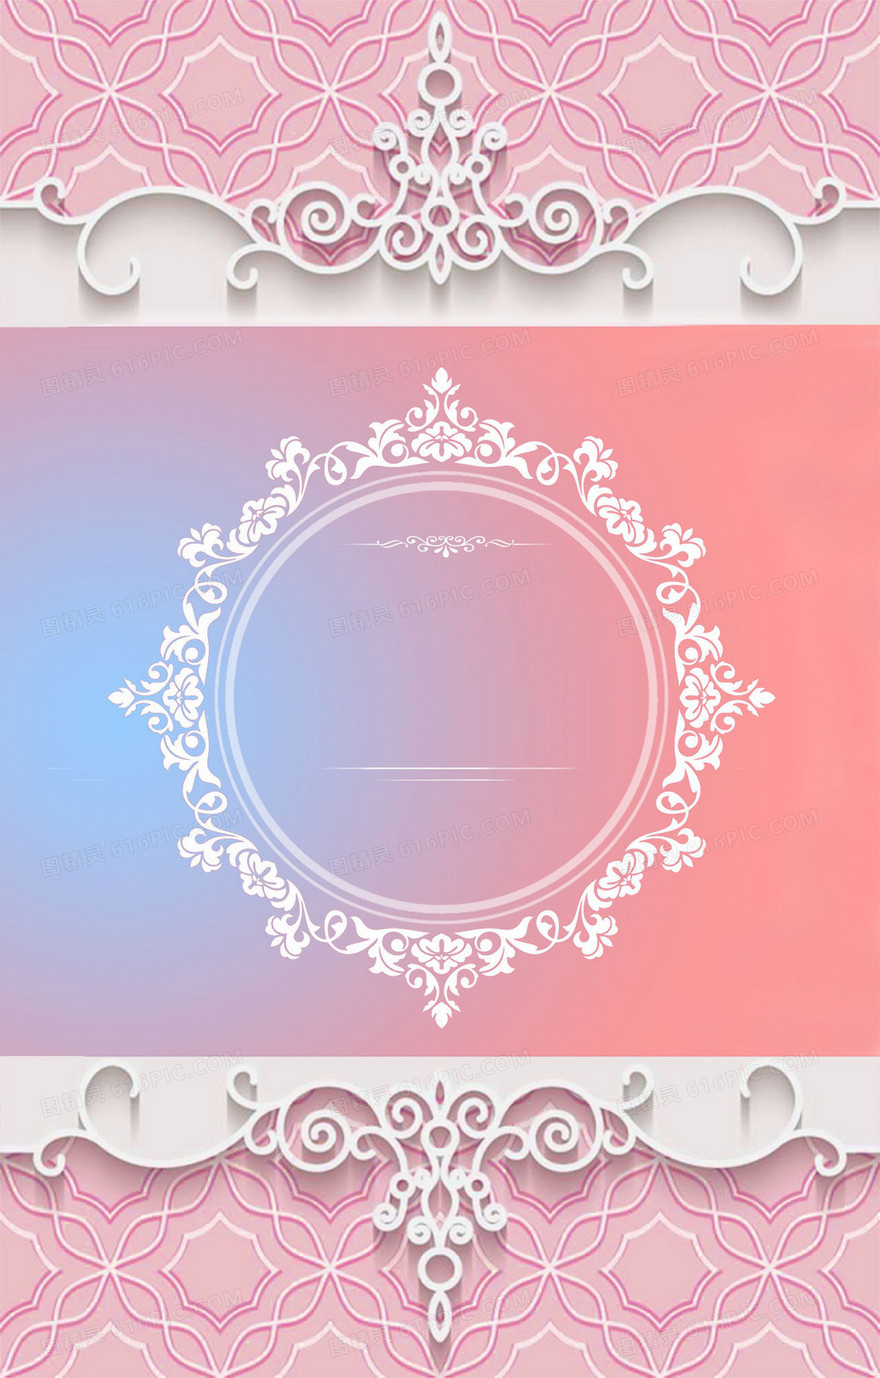 甜美粉色系列婚礼海报